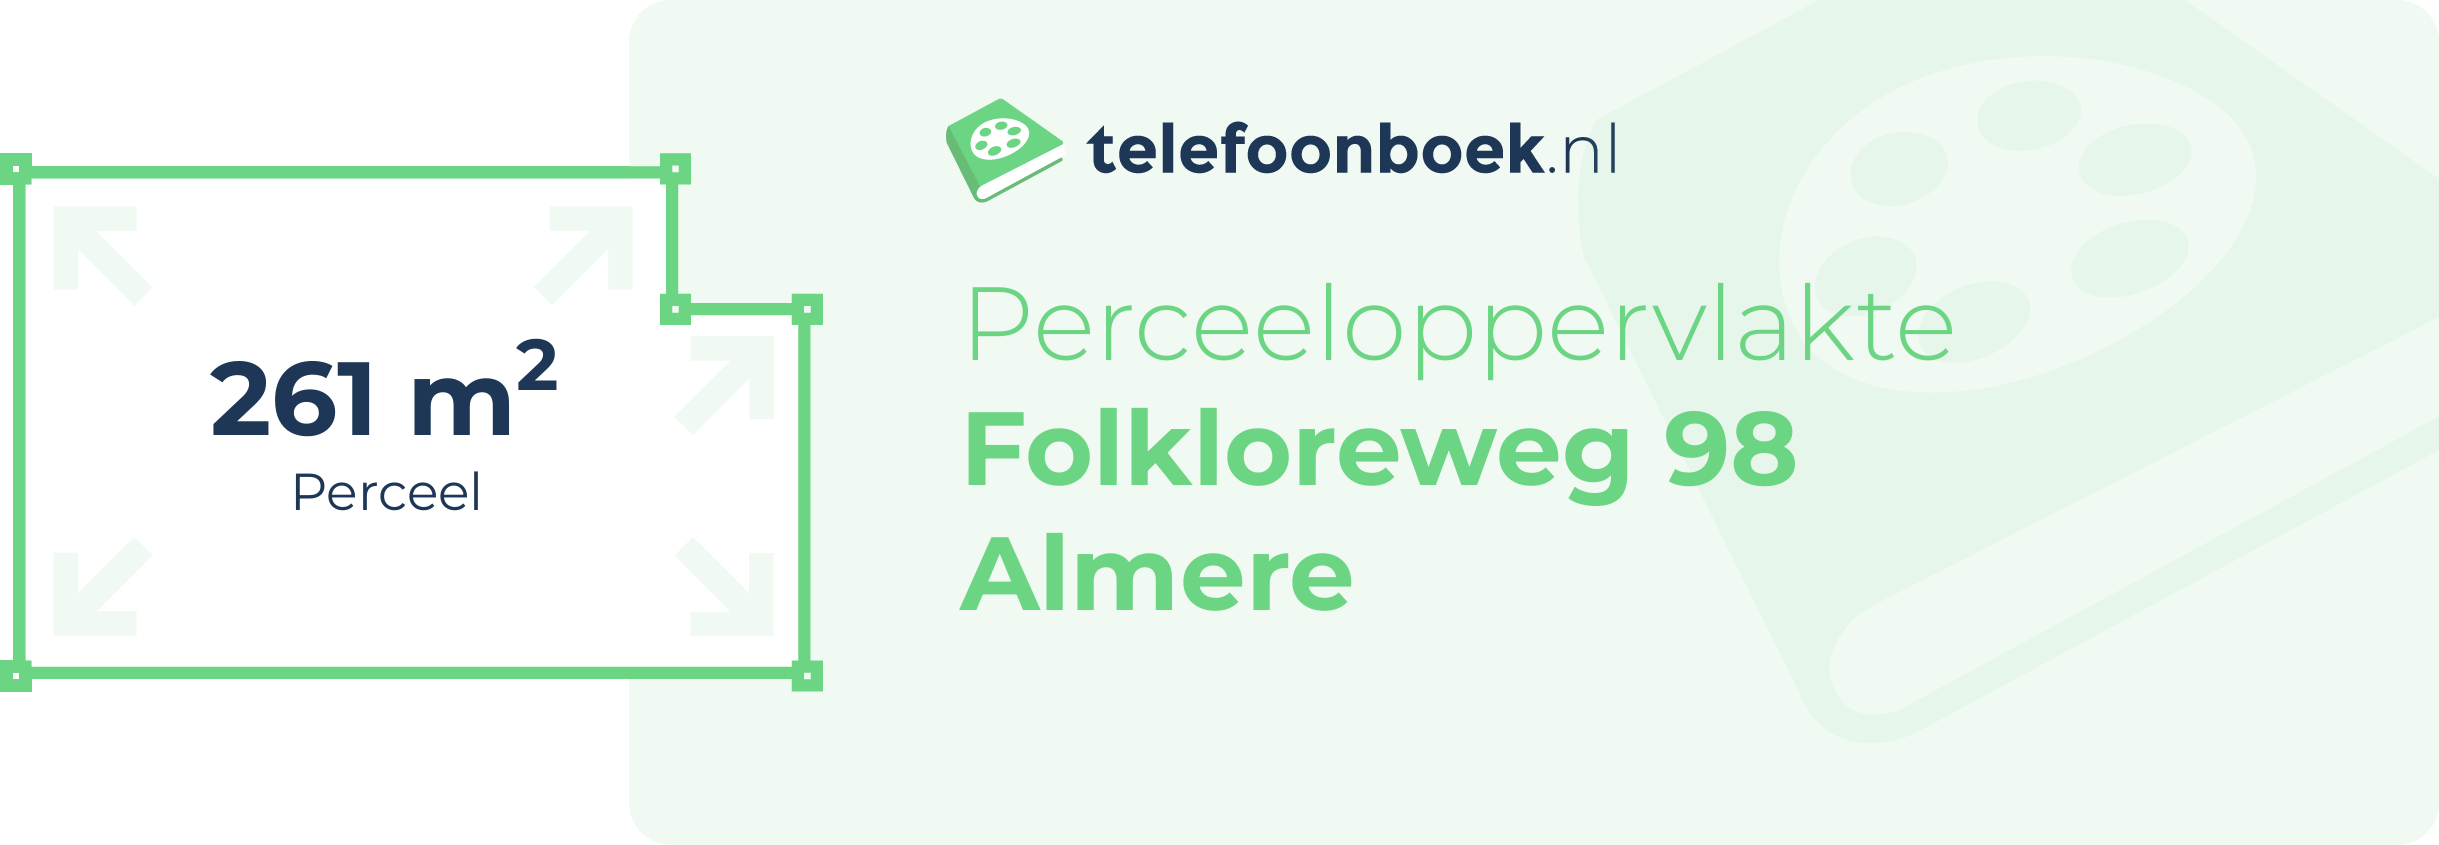 Perceeloppervlakte Folkloreweg 98 Almere